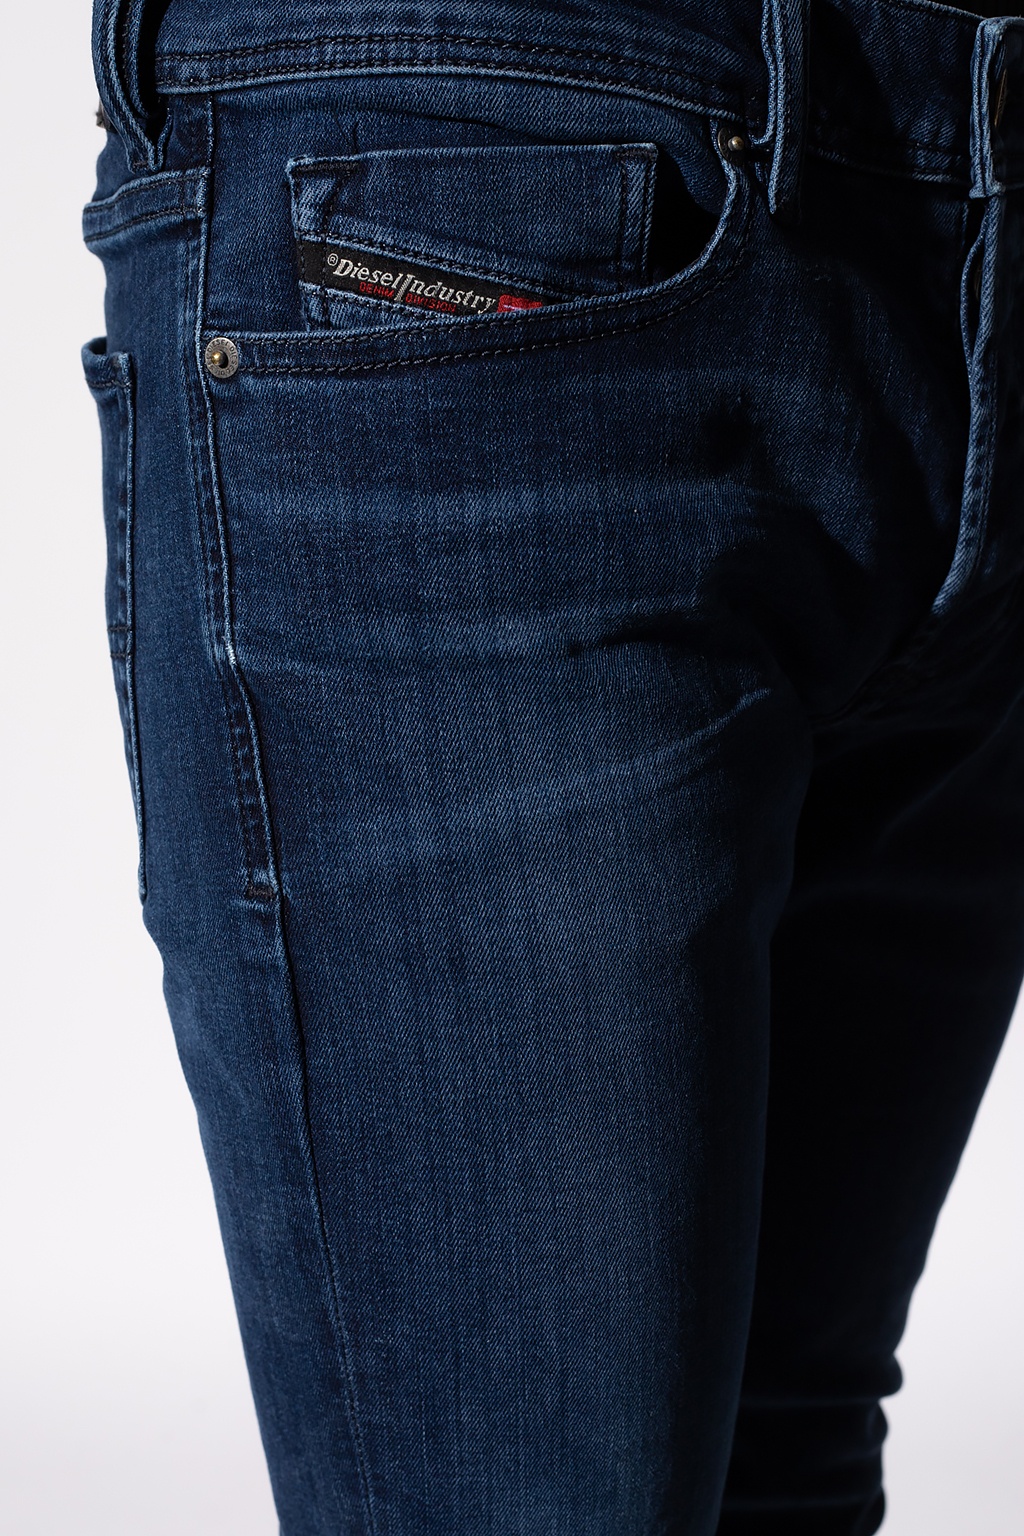 Uitputten letterlijk peddelen Diesel 'Sleenker' skinny jeans | Yours Bordeaux leggings | Men's Clothing |  IetpShops